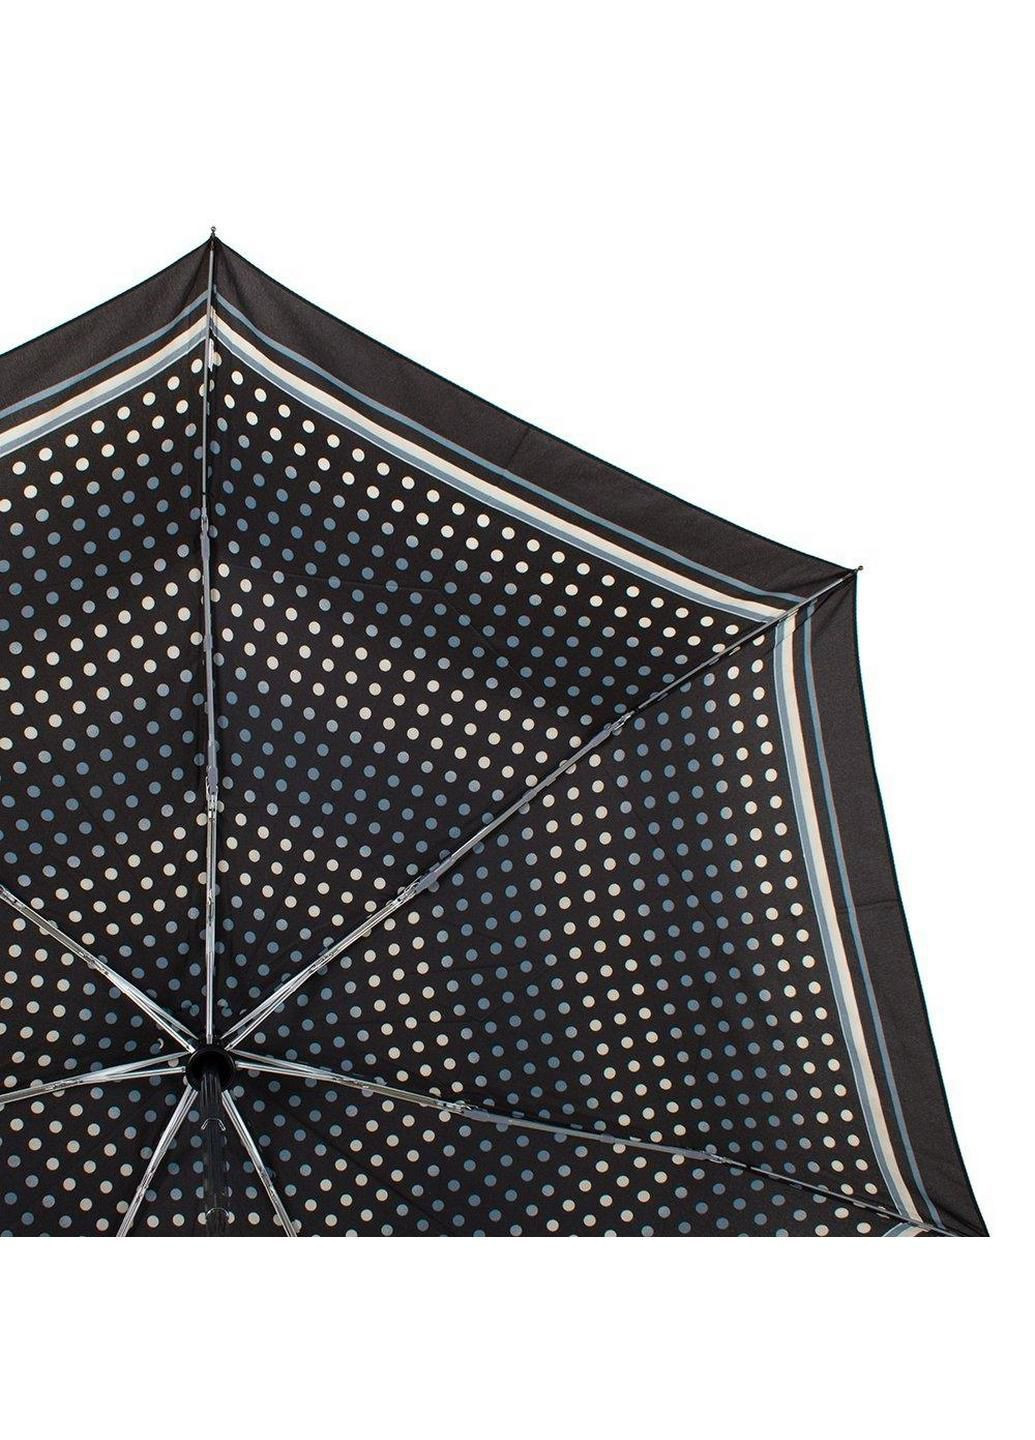 Складной зонт полный автомат 95 см Happy Rain (197766599)